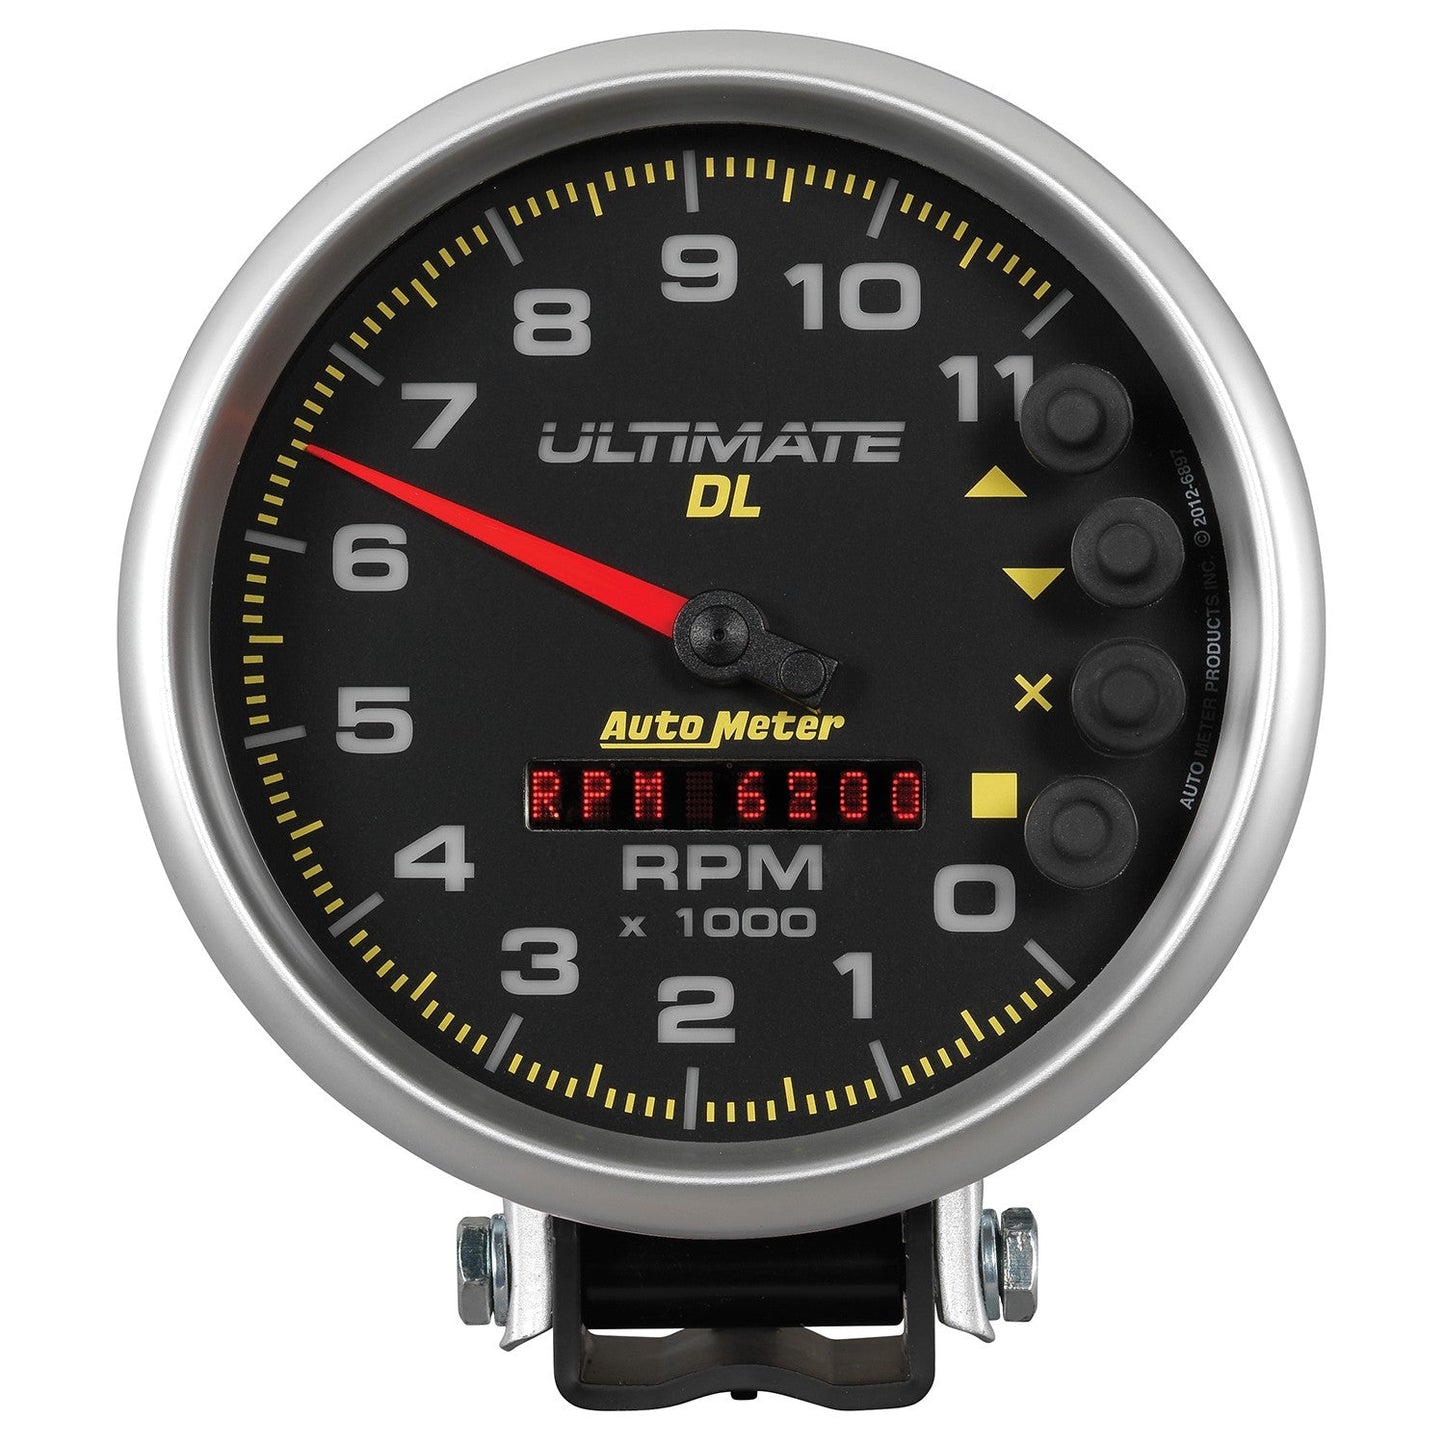 AutoMeter - TACÓMETRO DE 5", 0-11 000 RPM, PEDESTAL, REPRODUCCIÓN ULTIMATE DL, NEGRO (6897)